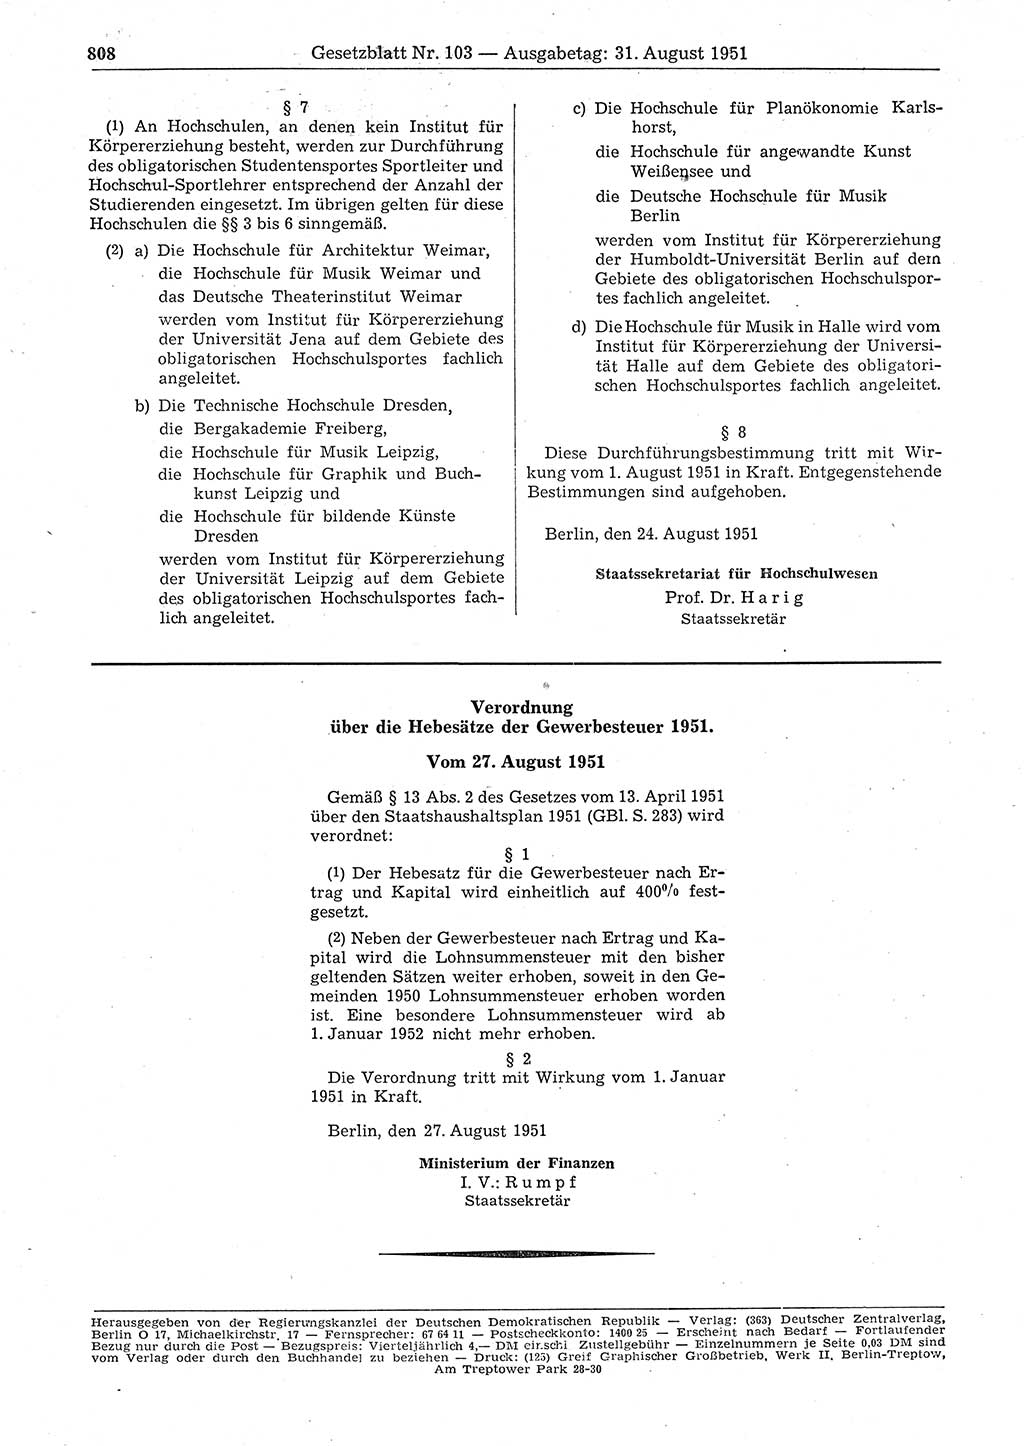 Gesetzblatt (GBl.) der Deutschen Demokratischen Republik (DDR) 1951, Seite 808 (GBl. DDR 1951, S. 808)